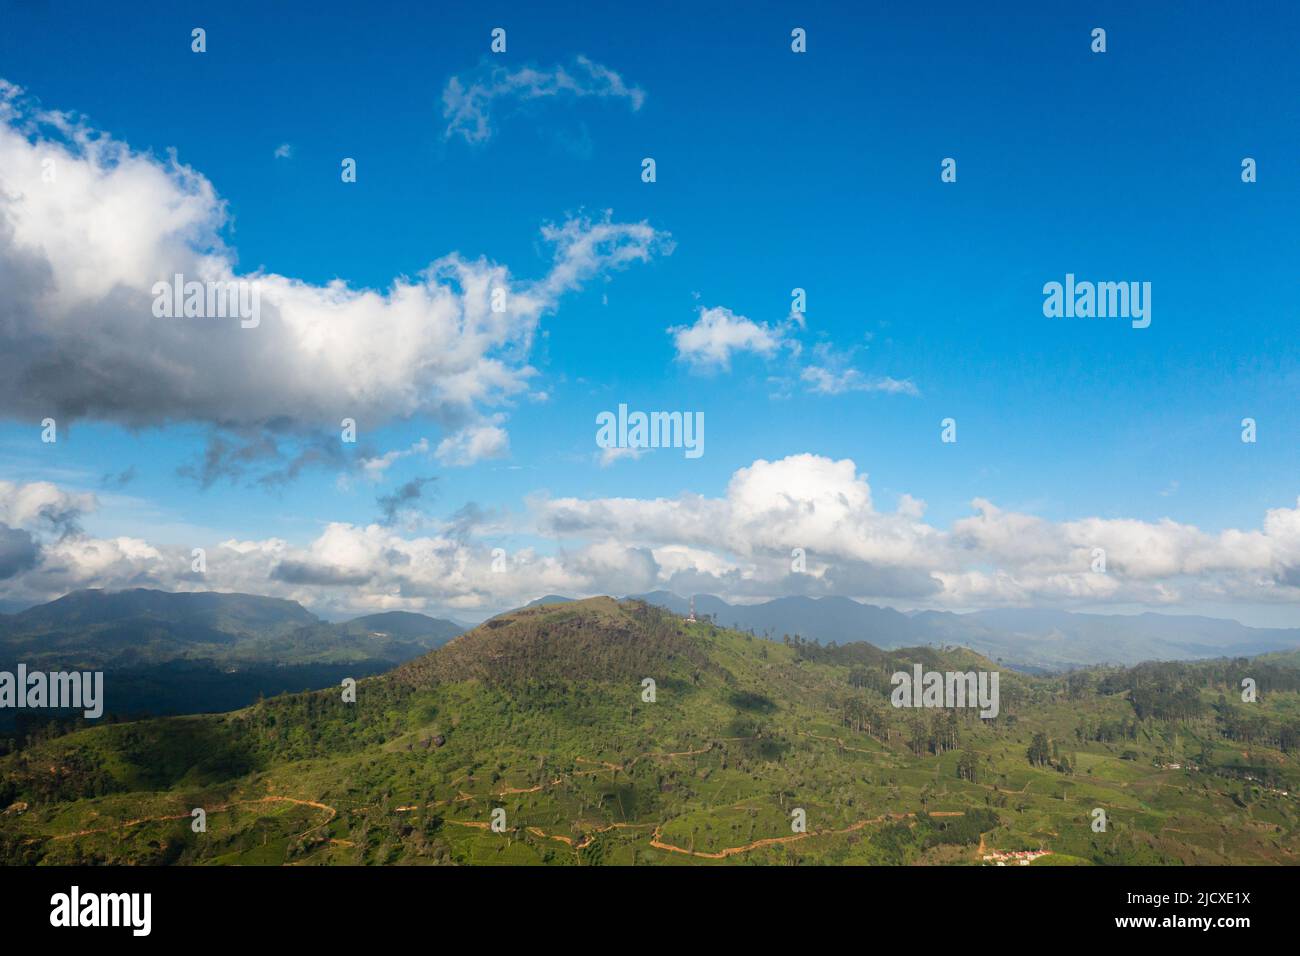 Vista aerea della piantagione di tè verde contro il cielo blu e le nuvole nelle montagne. Paesaggio della tenuta del tè. Maskeliya, Sri Lanka. Foto Stock